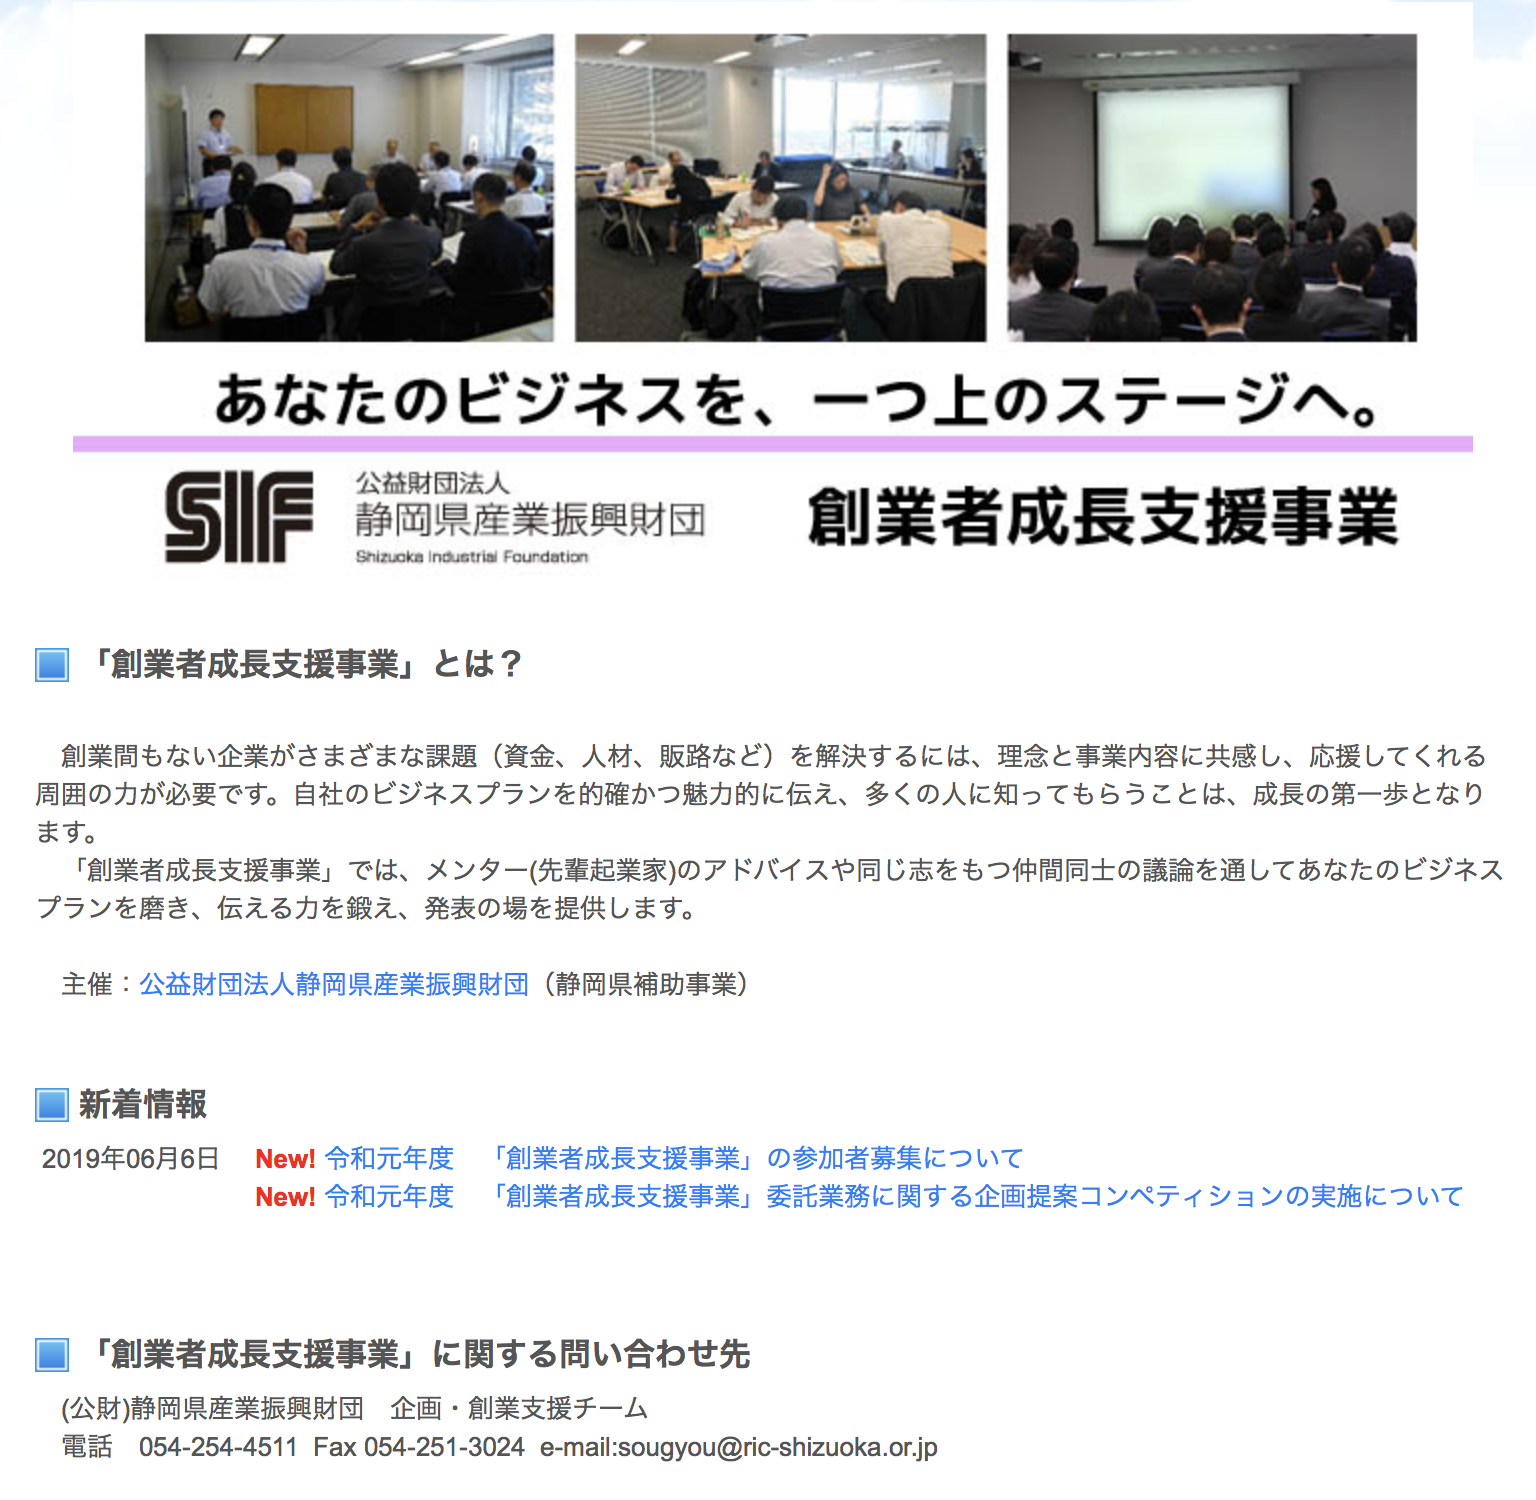 (公財)静岡県産業振興財団創業者成長支援事業に「株式会社はなか」が認定されました。